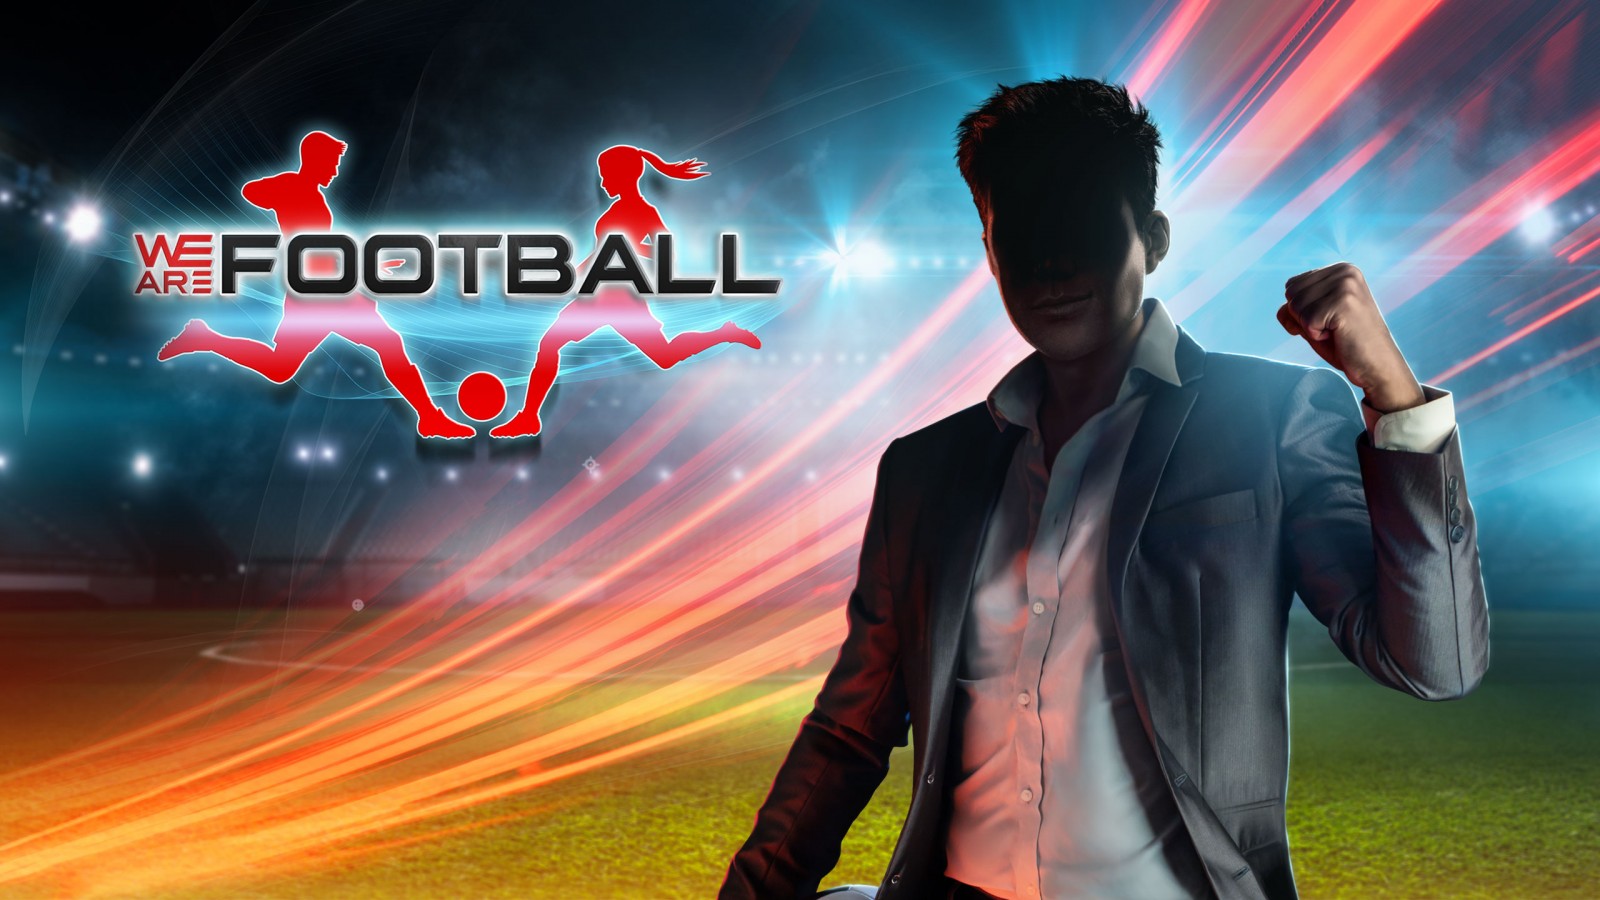 Winning Streak Games y THQ Nordic anunciaron que su nuevo juego We Are Football ya se encuentra disponible